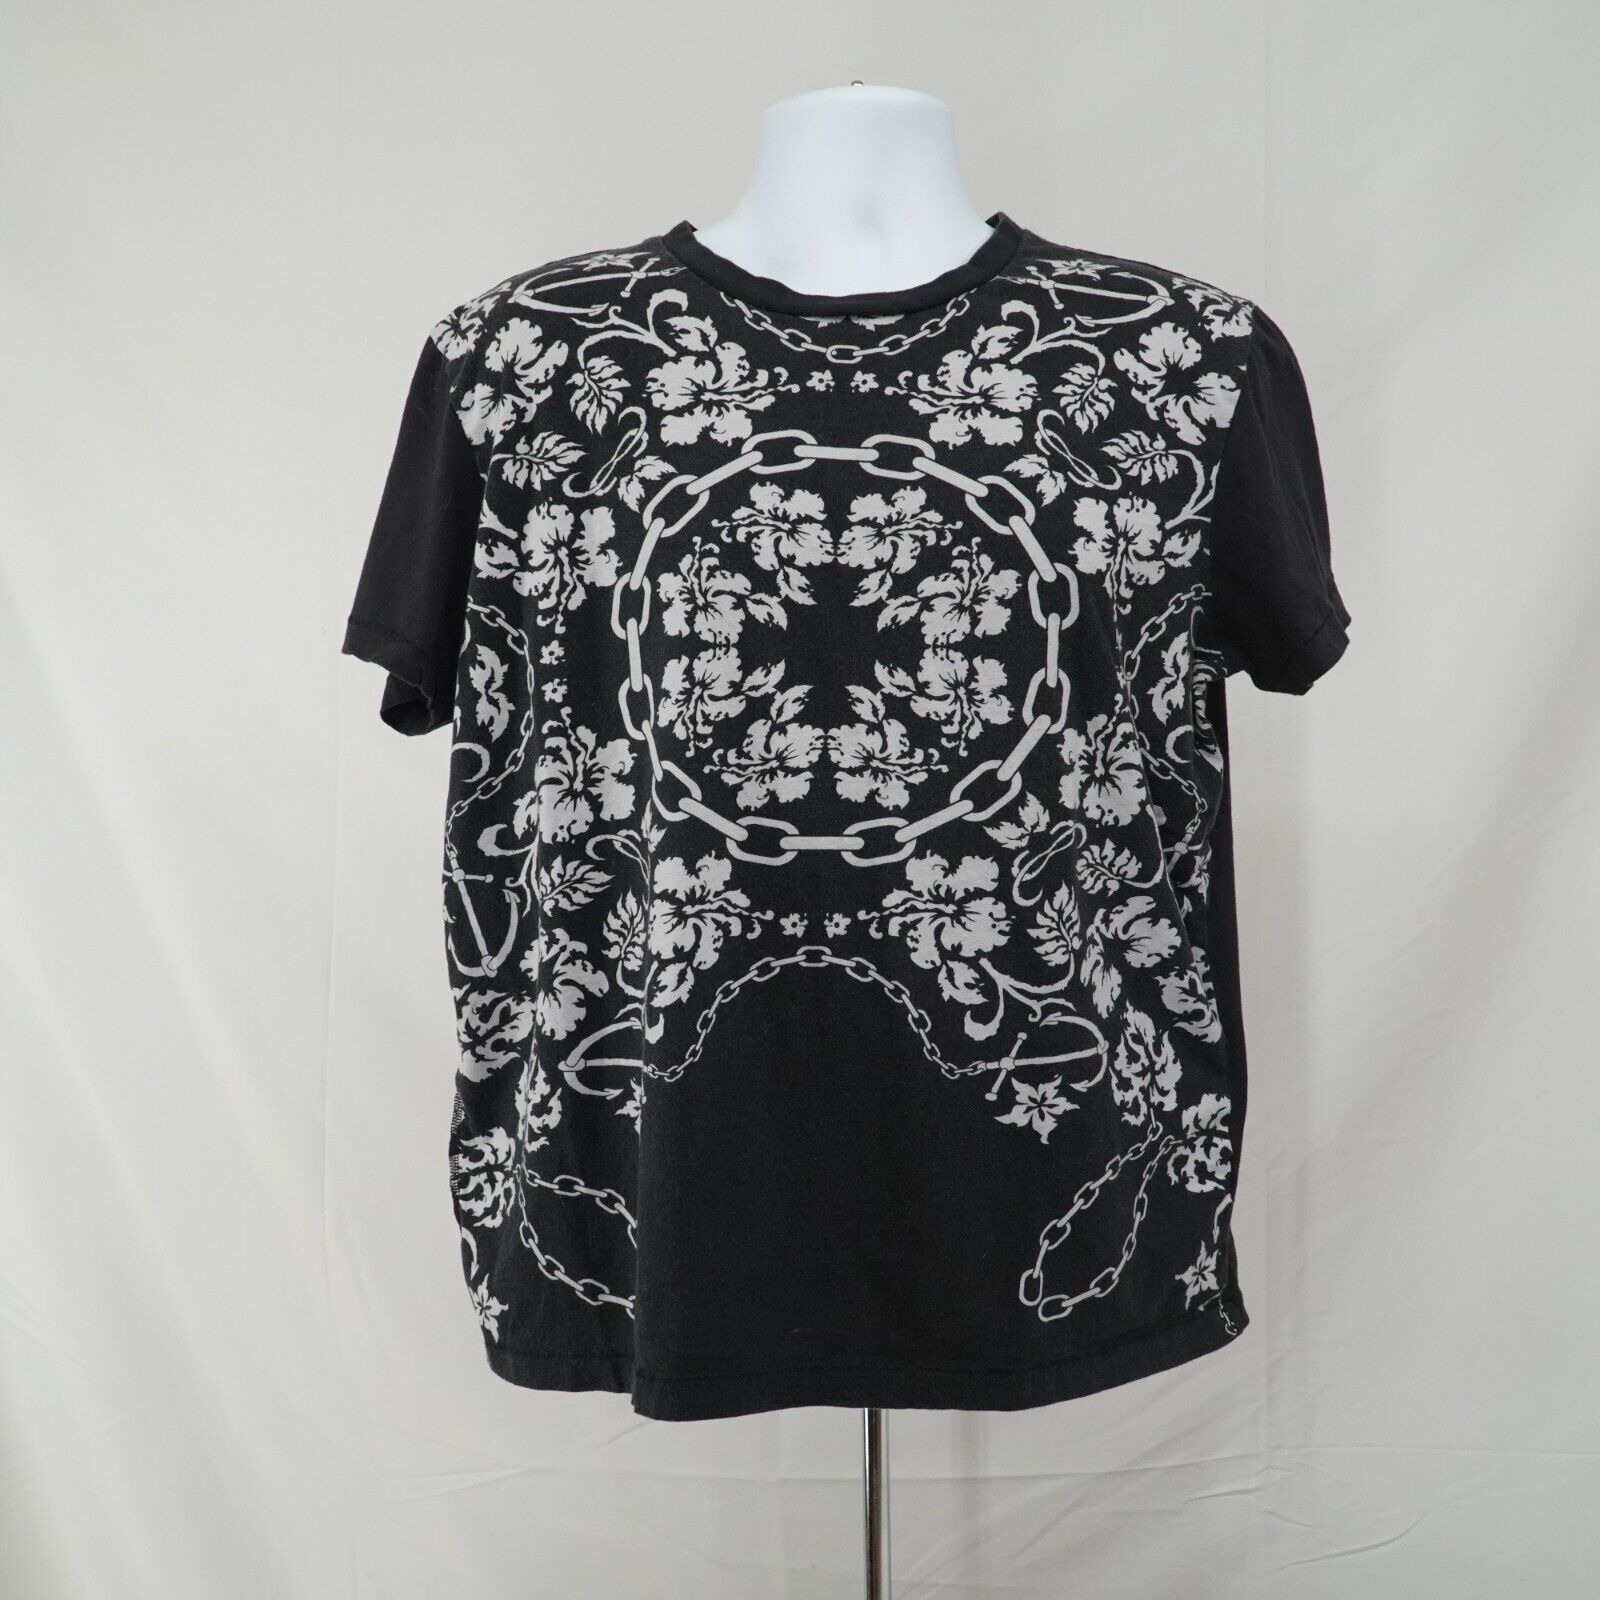 Black White Printed Shirt Floral Chains Anchor Hawaiian Tee - 1